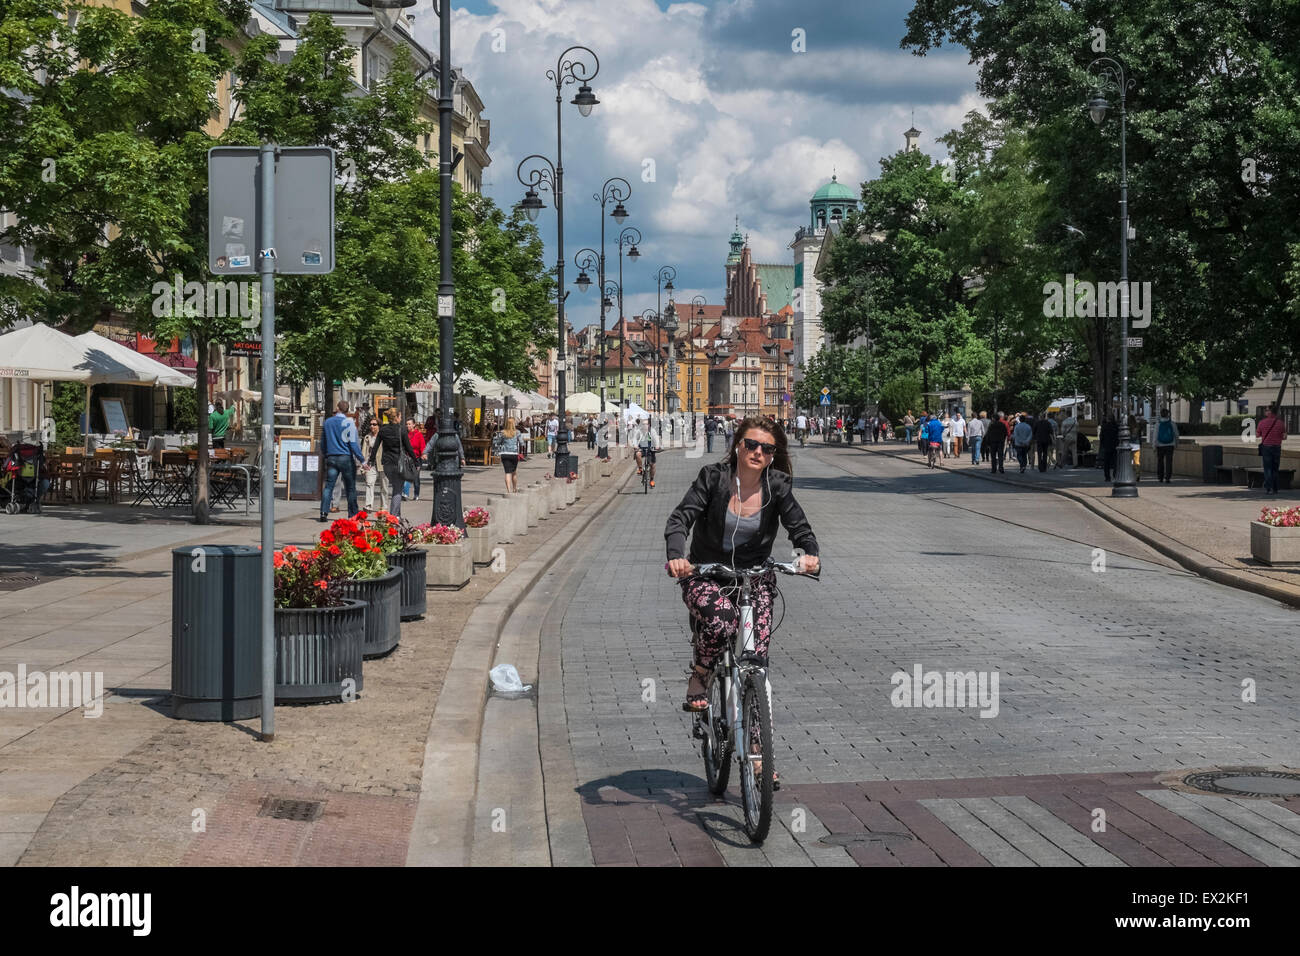 Young woman cycling on popular Krakowskie Przedmieście street, Old Town, Warsaw, Poland Stock Photo